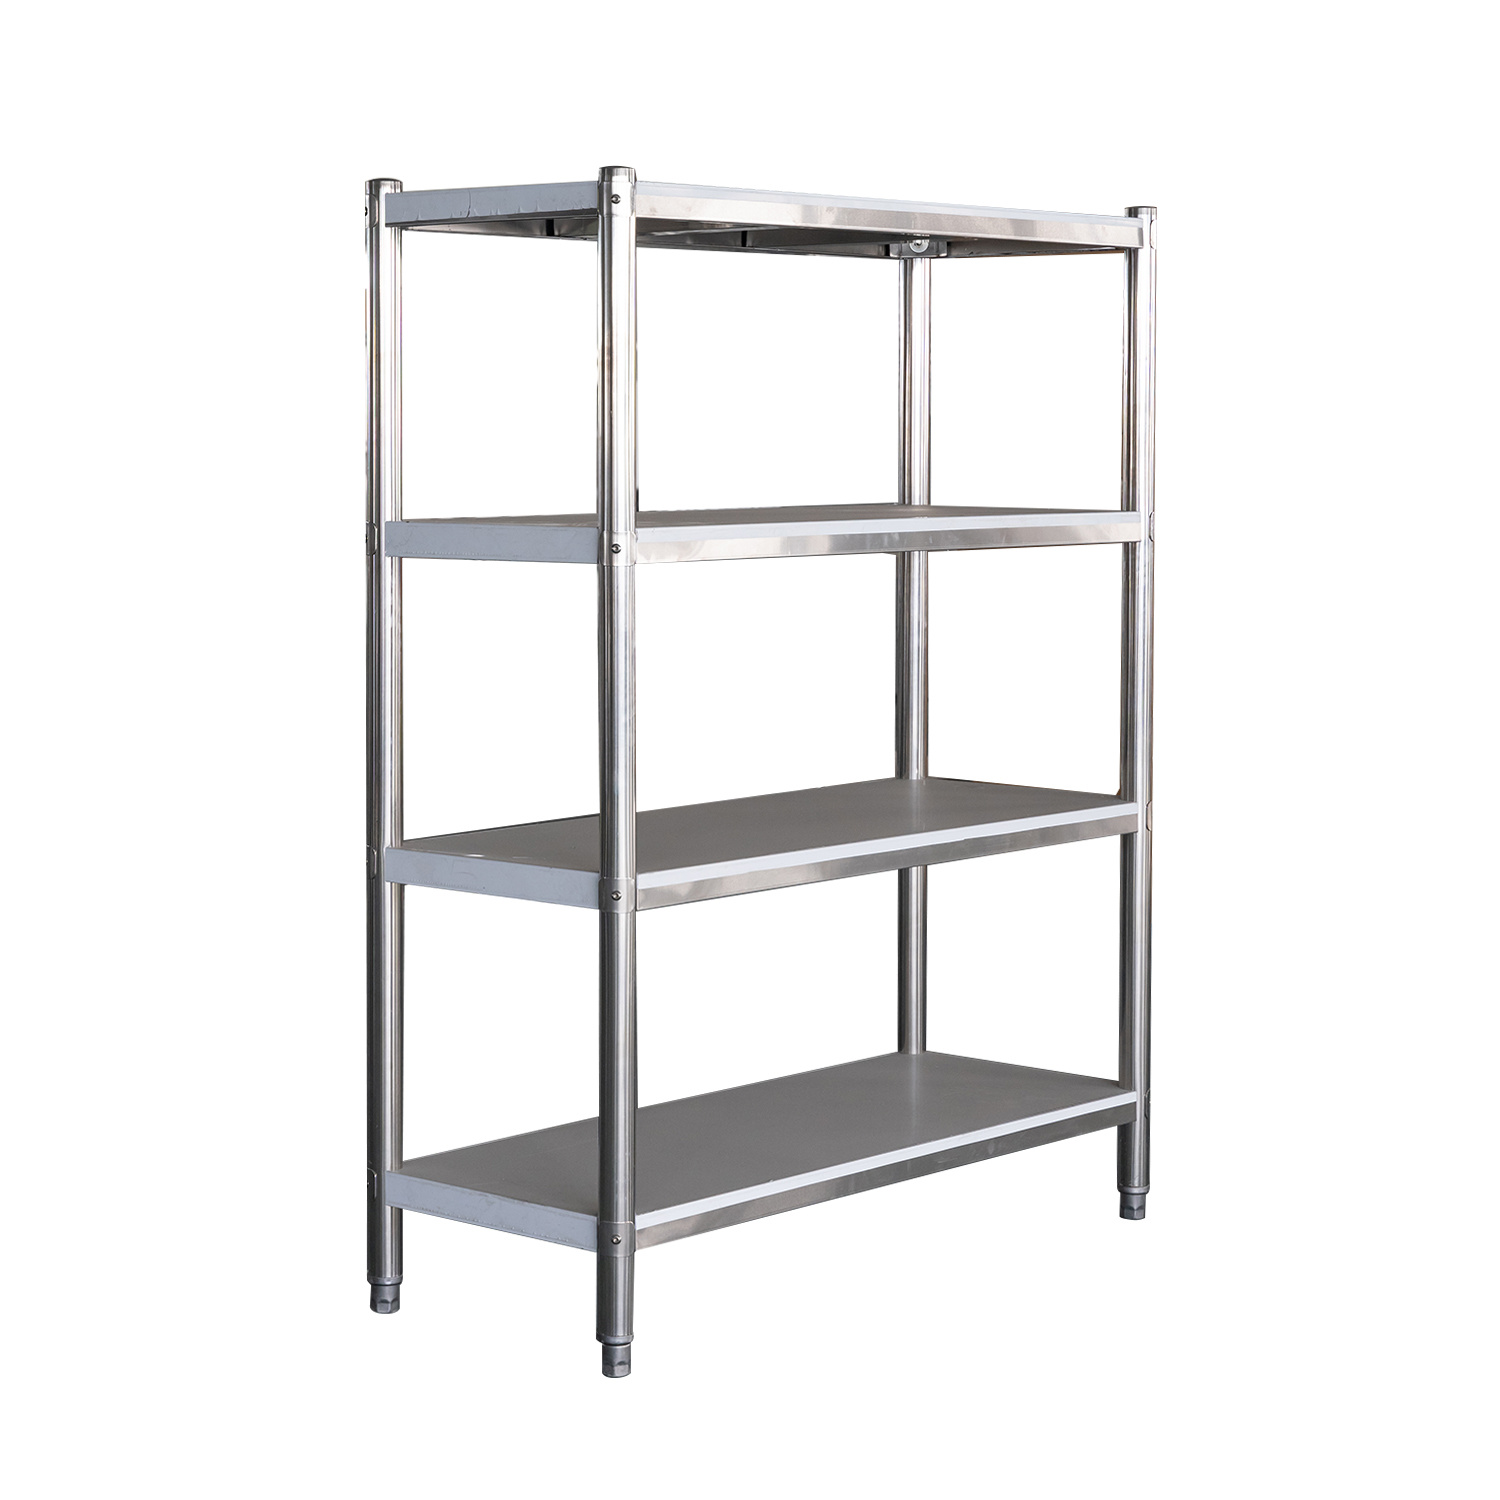 https://storageworks.ae/wp-content/uploads/2021/02/Stainless-Steel-Shelves-dubai.jpg